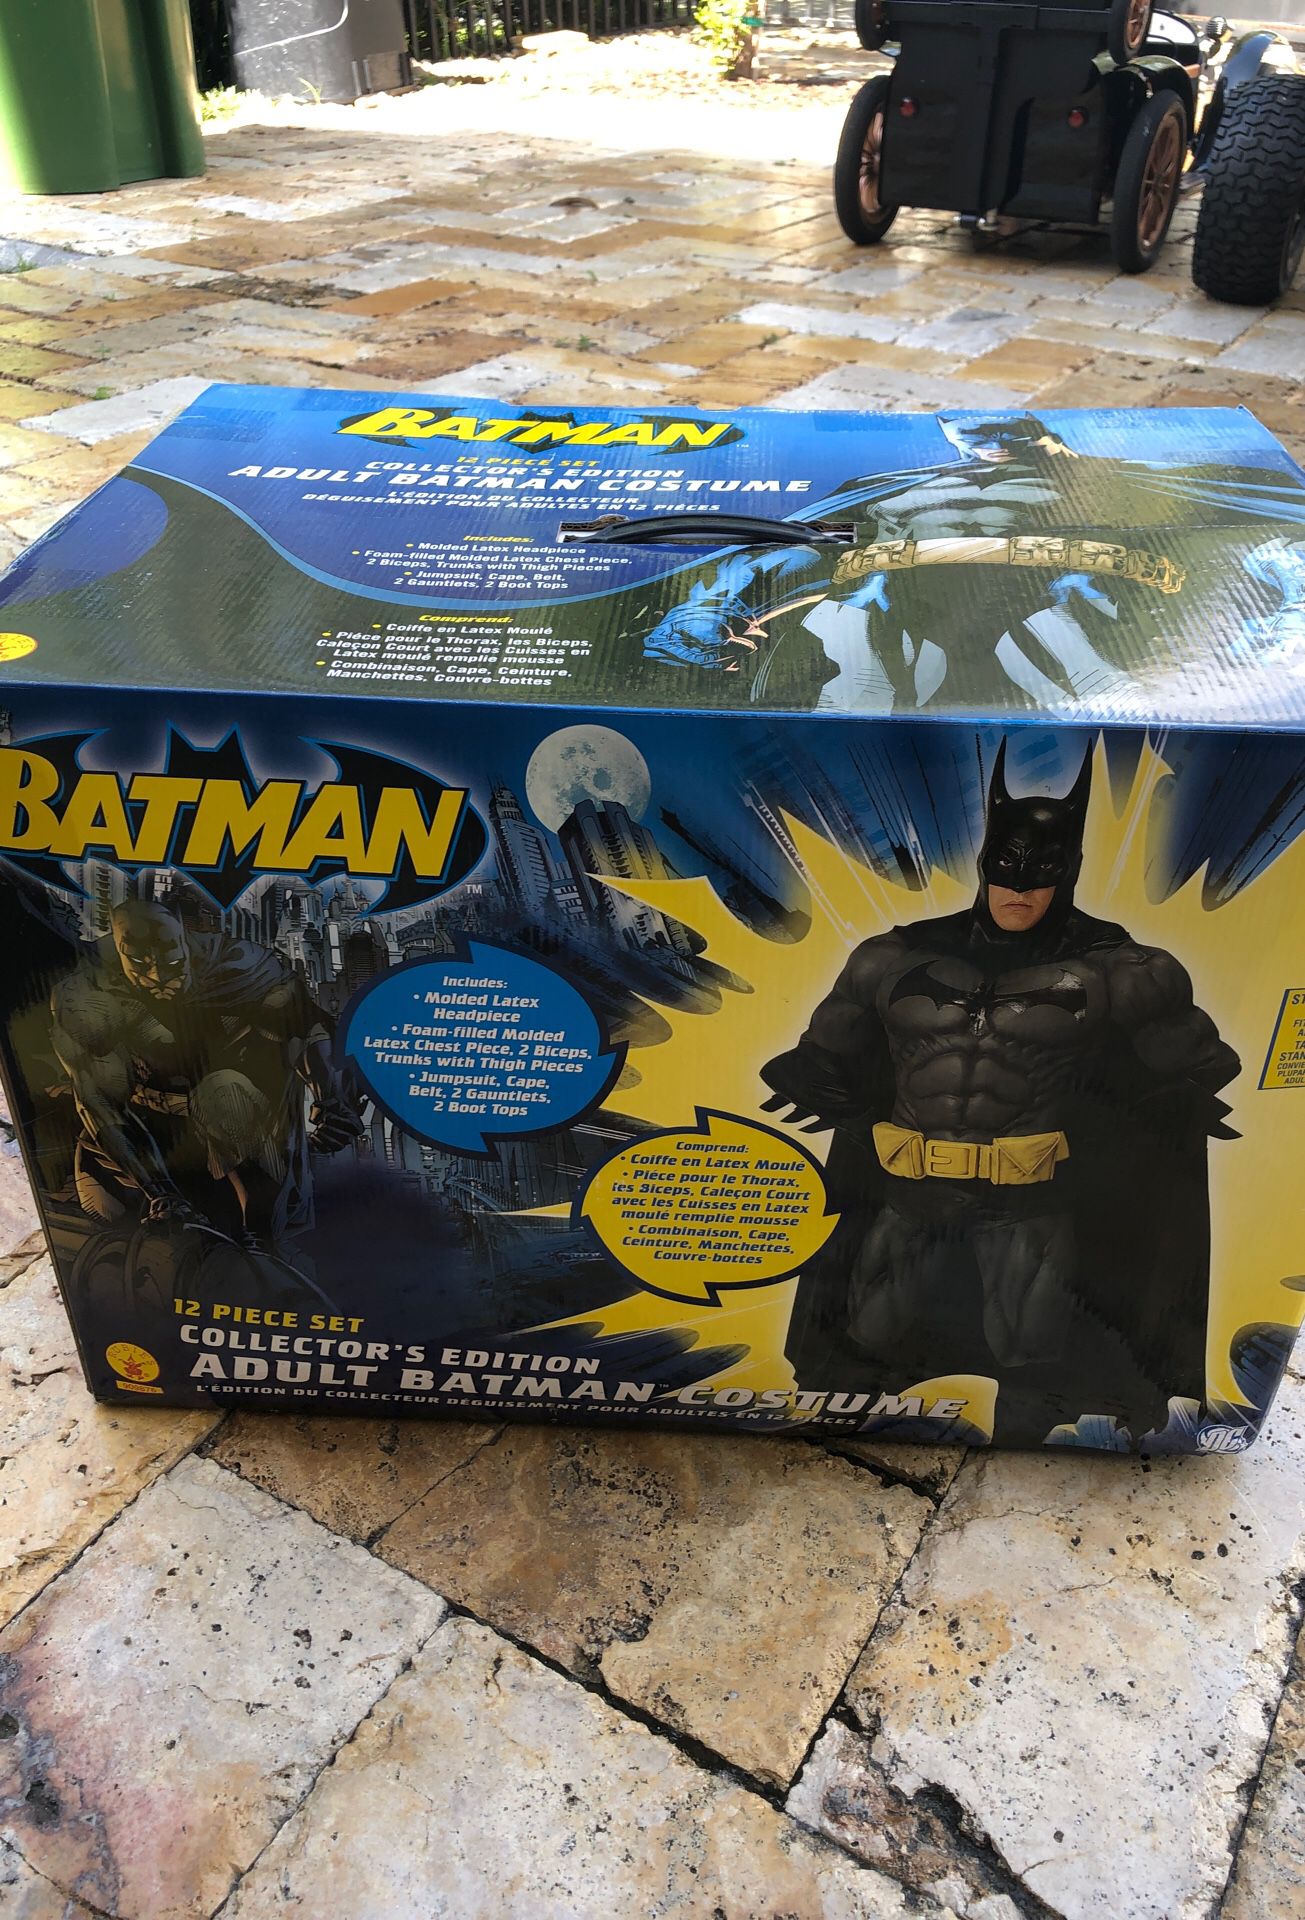 Adult Batman costume